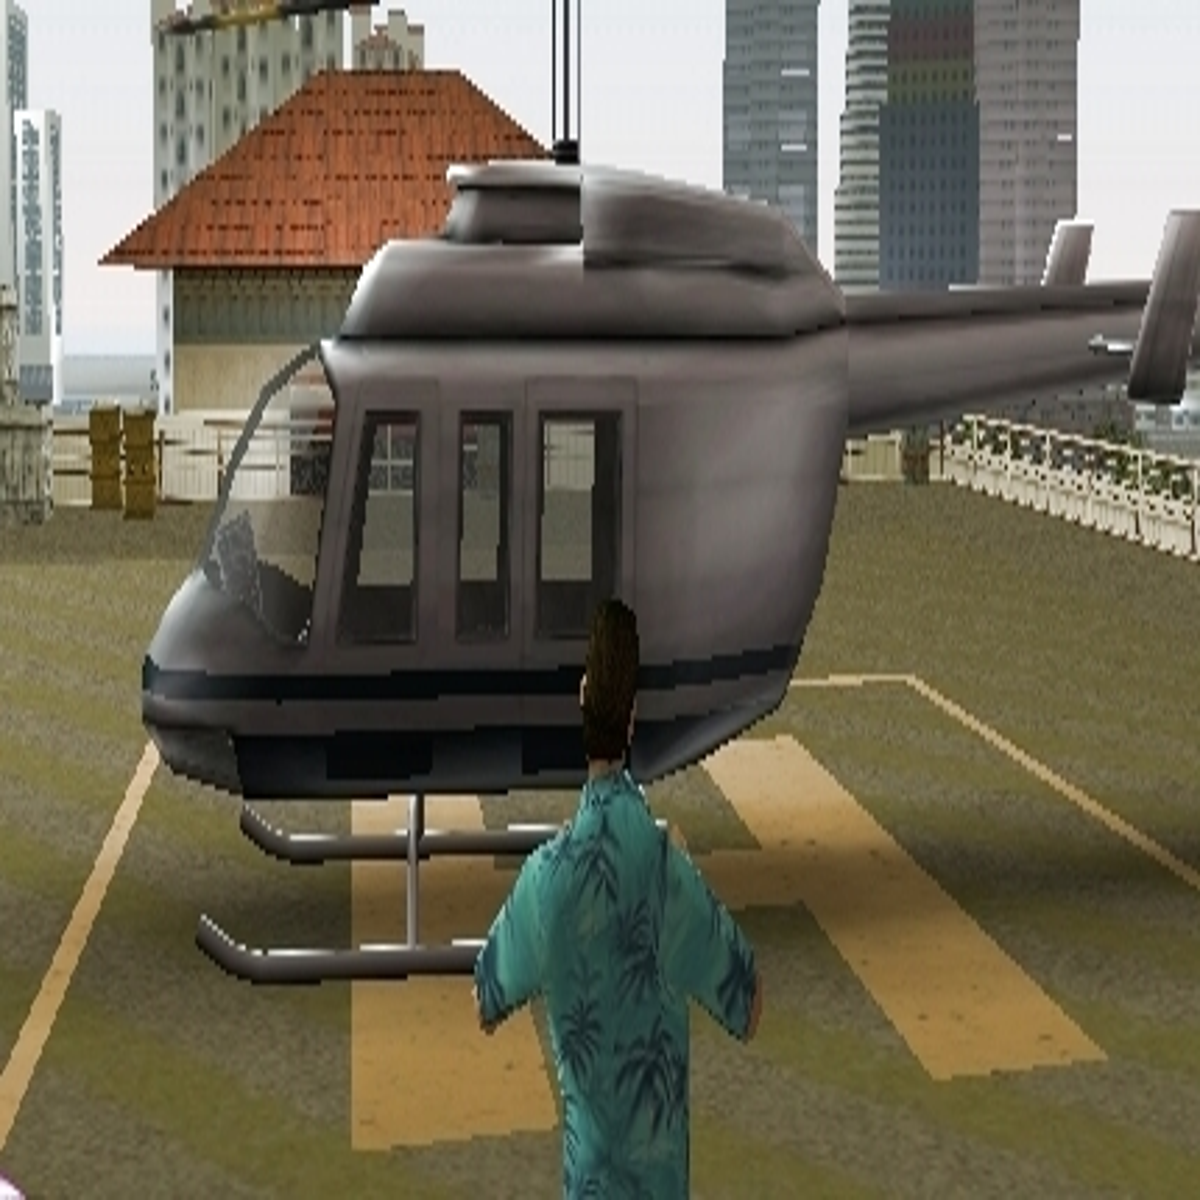 Faça o código do final do vídeo para fazer aparecer o Helicóptero